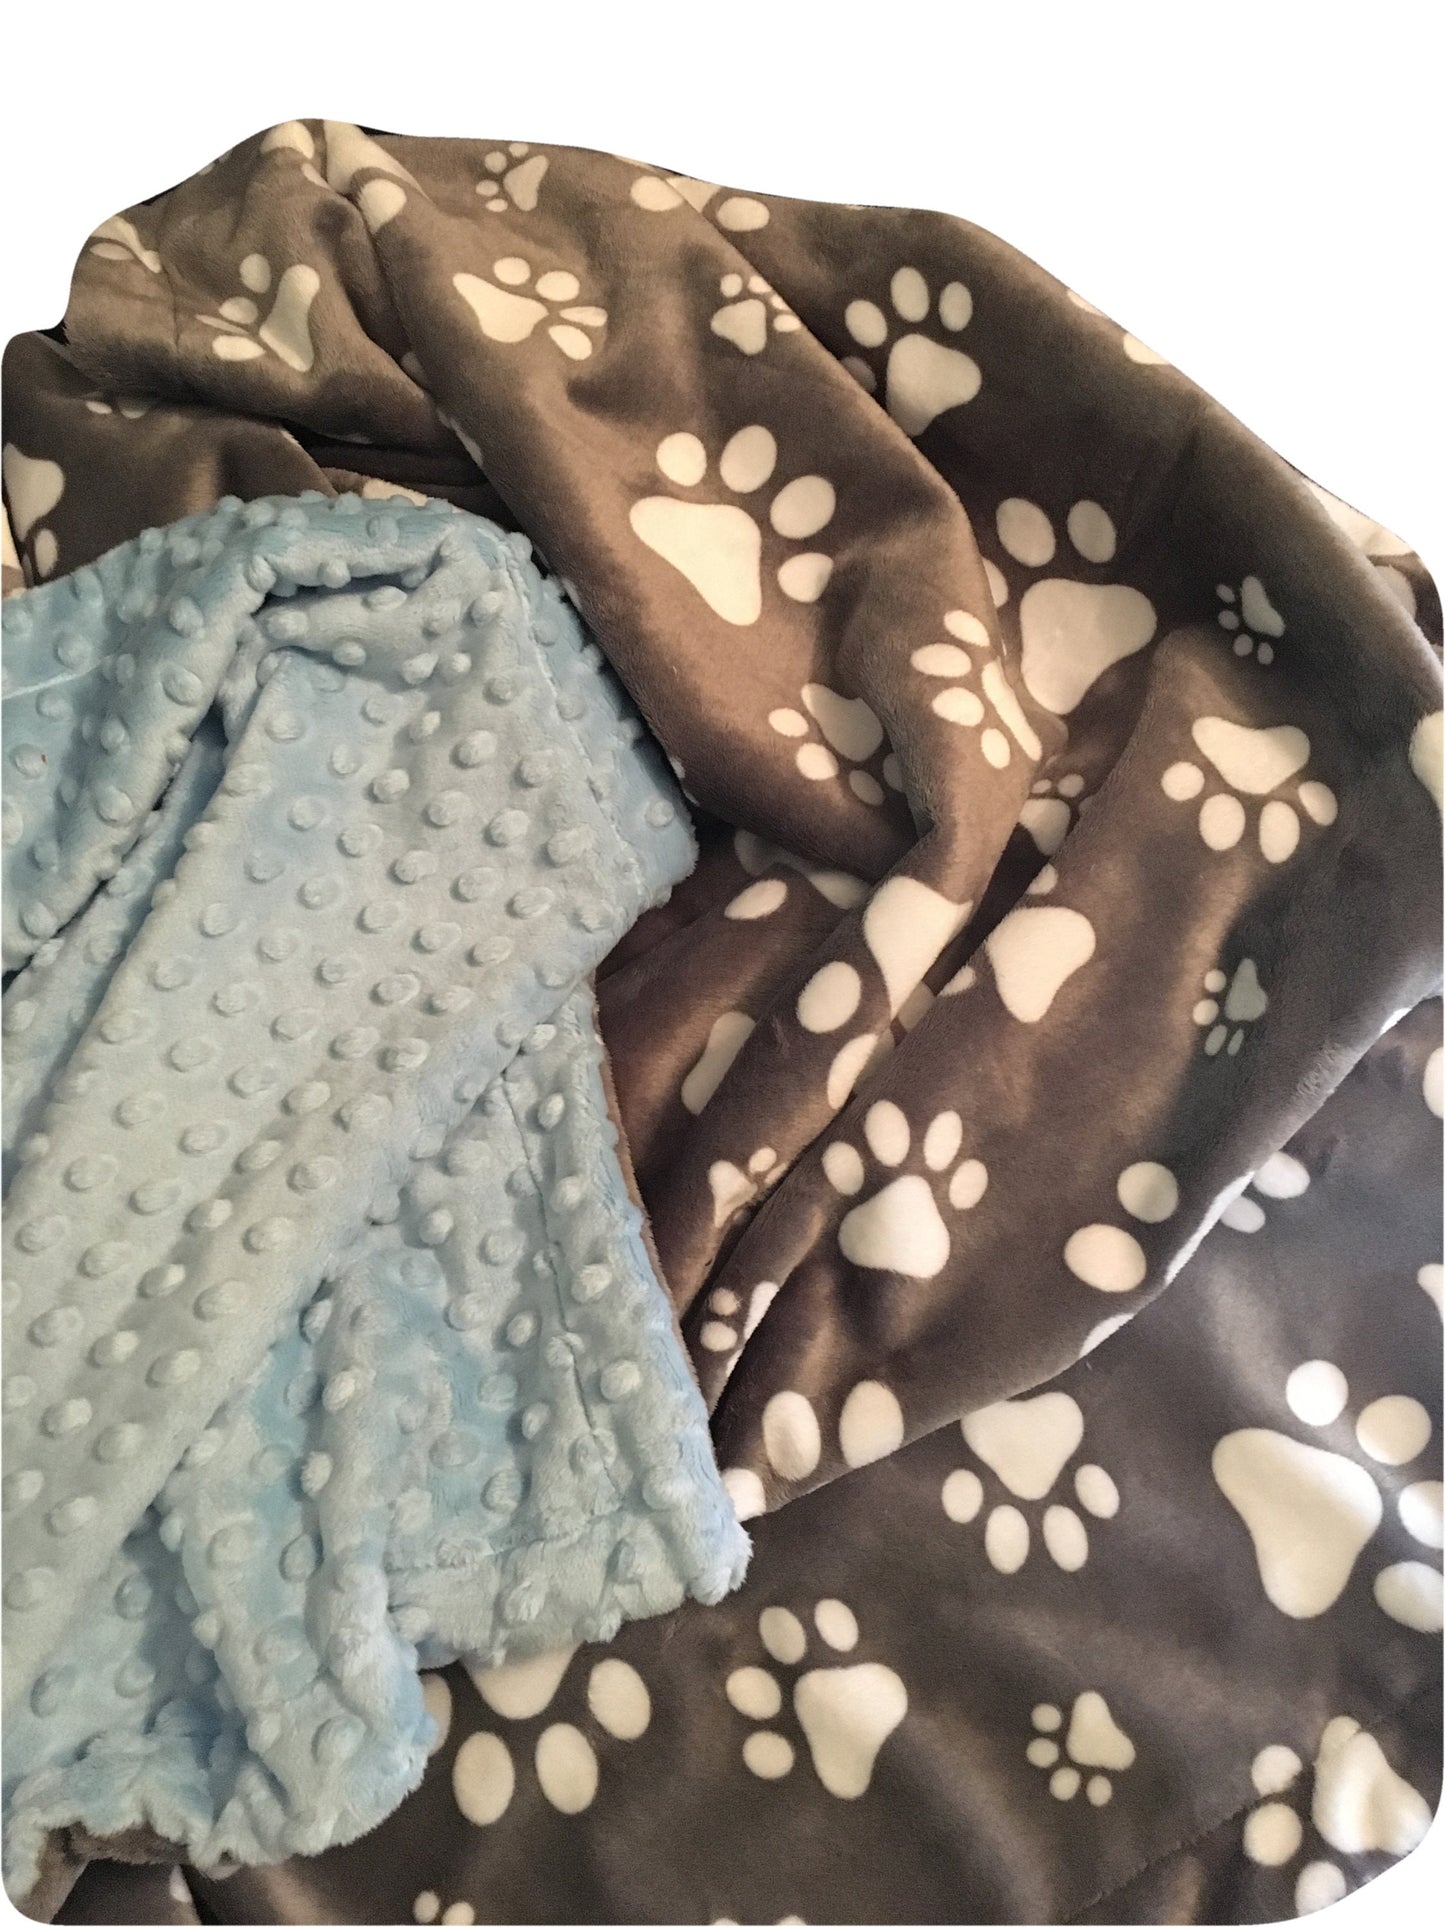 Pet Blanket, Paw Print Minky Blanket, Adult Minky Blanket, Dog Blanket, Dog Lover